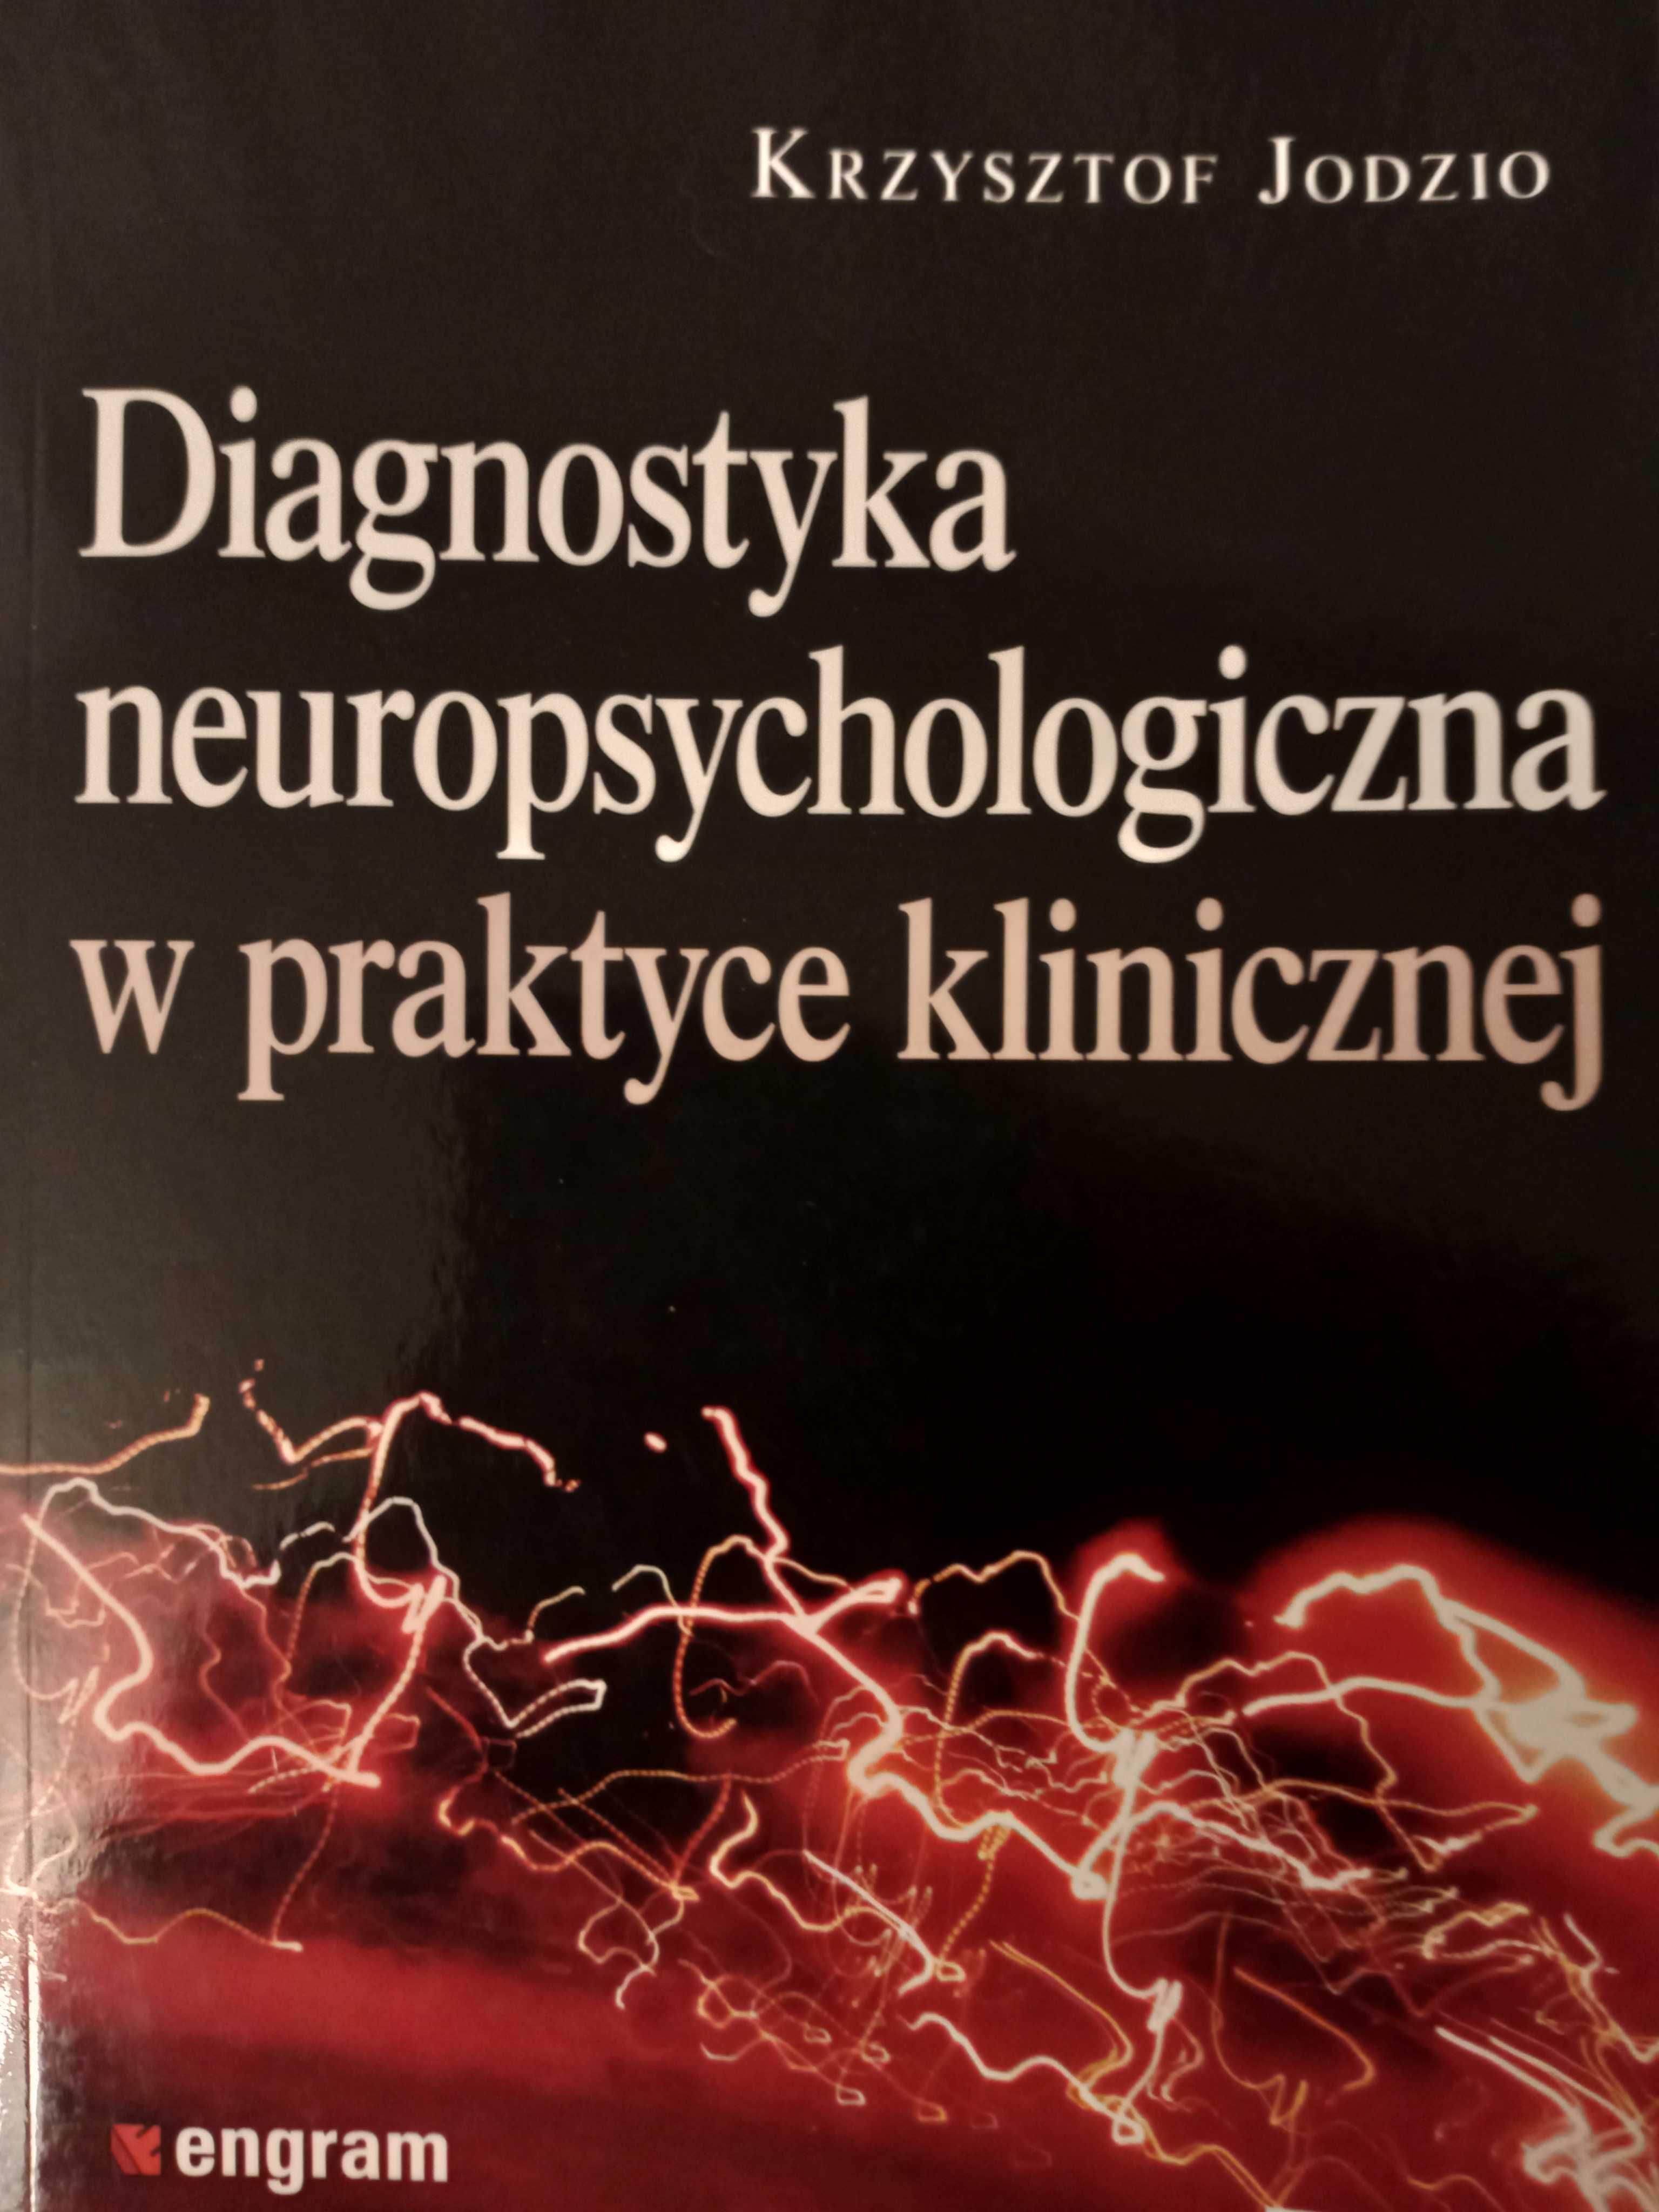 Diagnostyka neuropsychologiczna w praktyce klinicznej